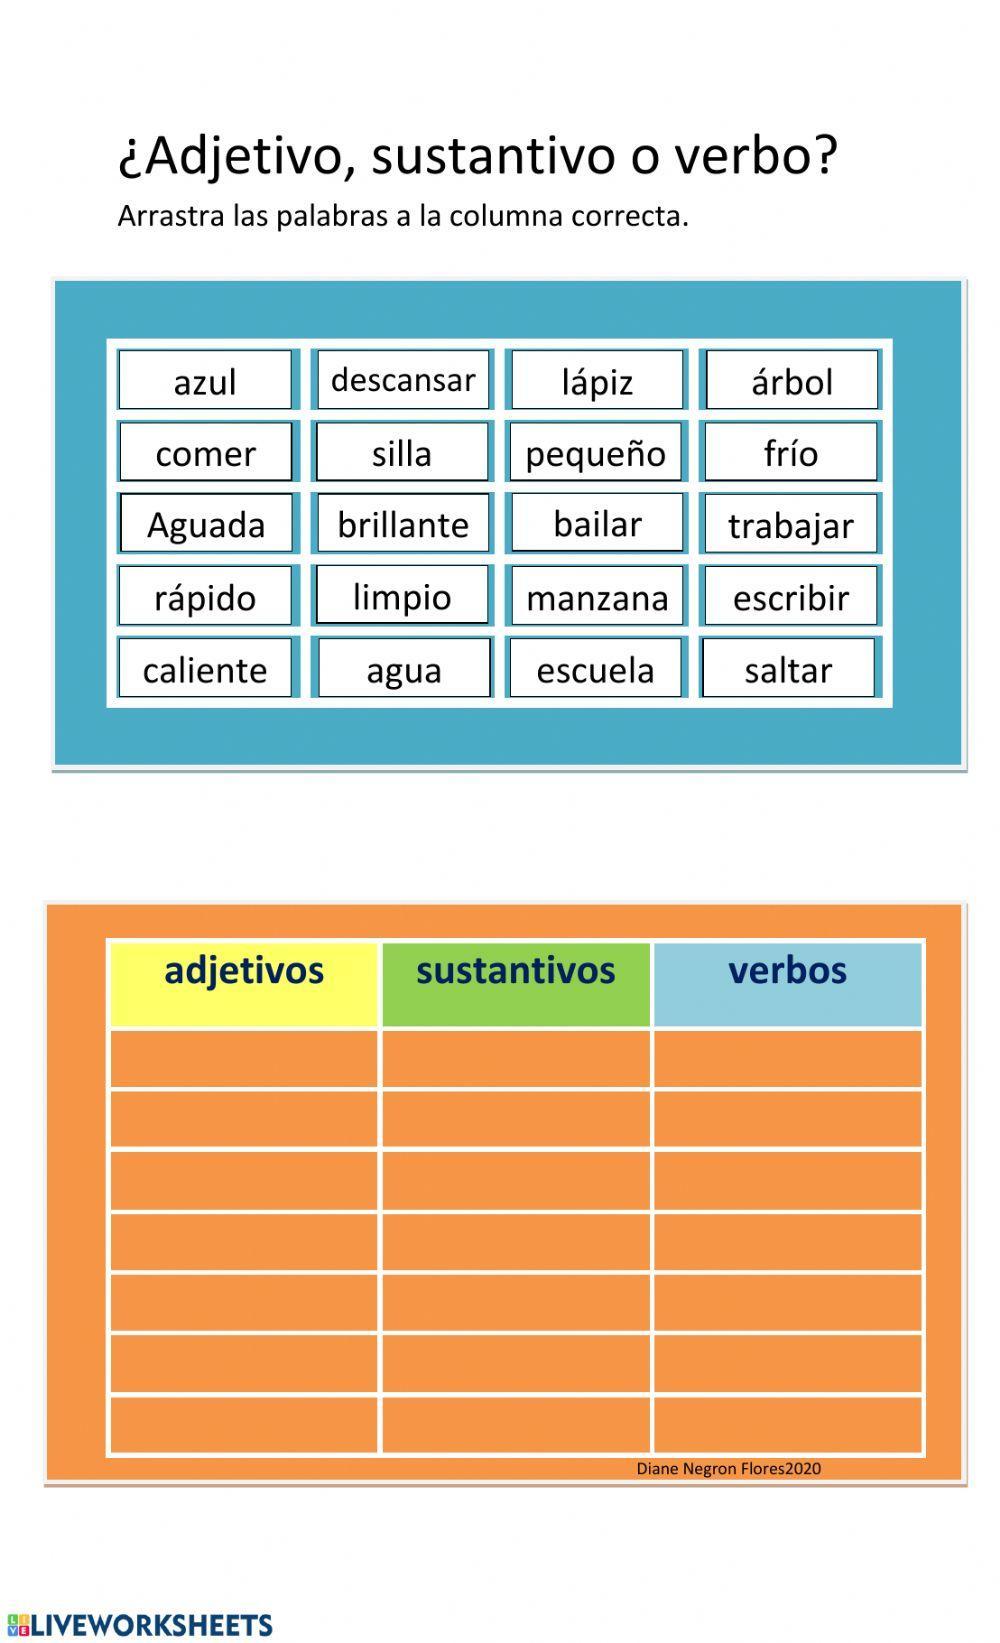 Sustantivos, verbos y adjetivos